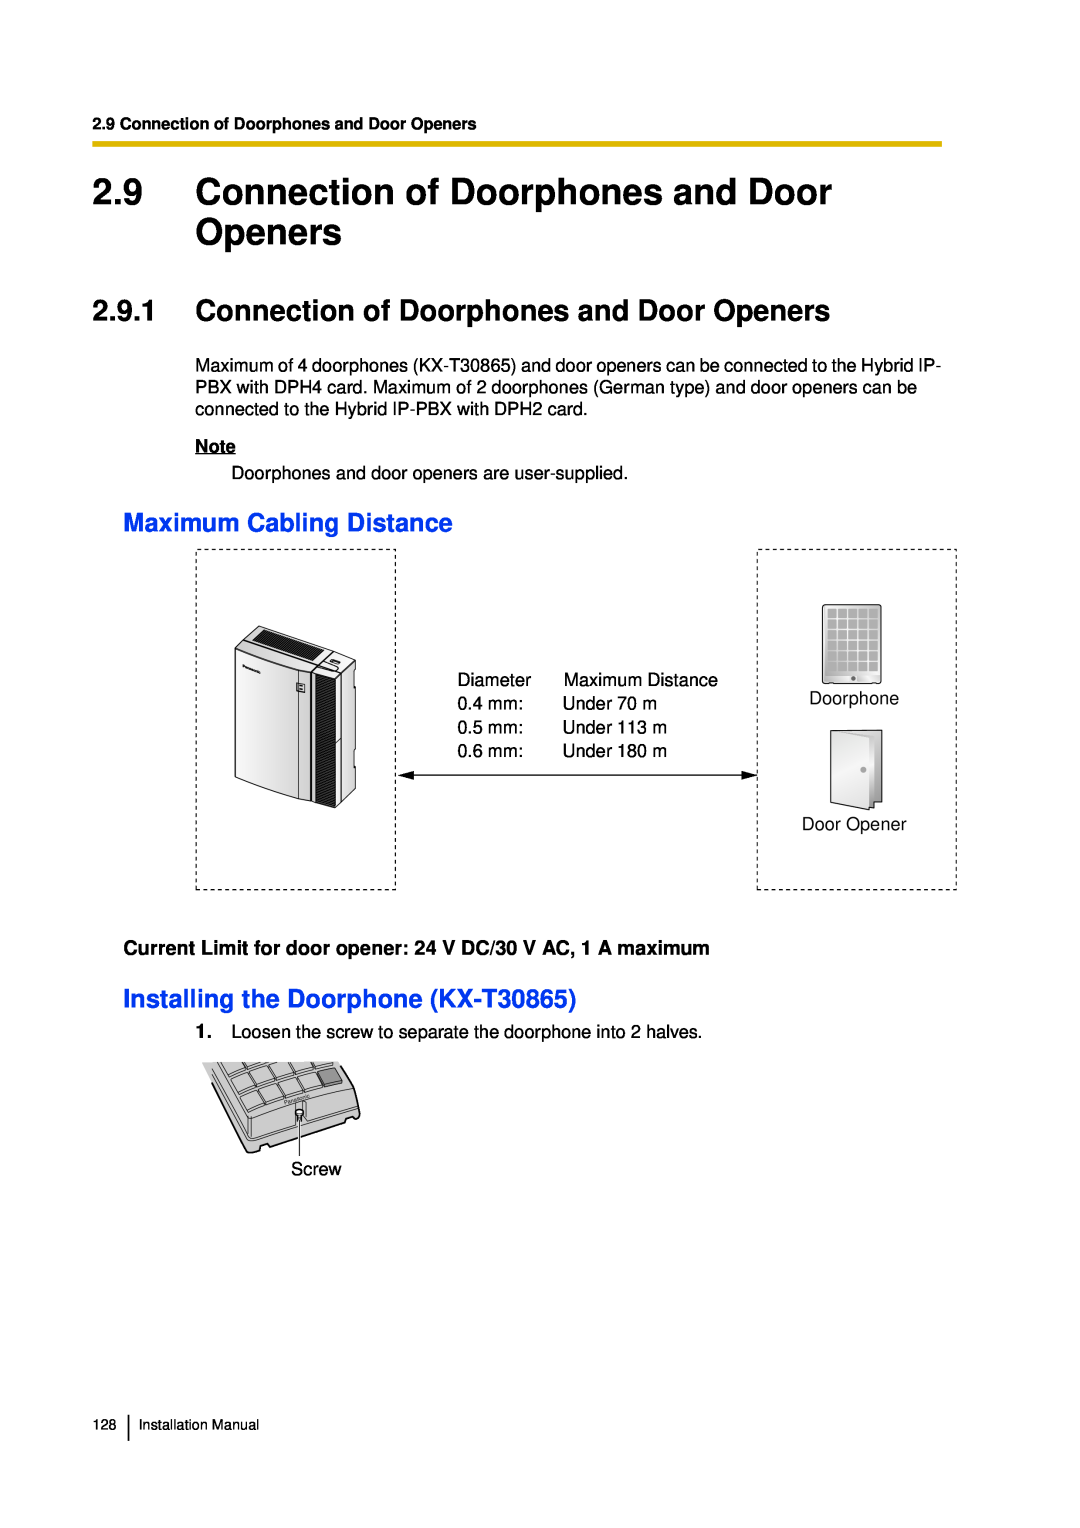 Panasonic KX-TDA30 2.9Connection of Doorphones and Door Openers, 2.9.1Connection of Doorphones and Door Openers 